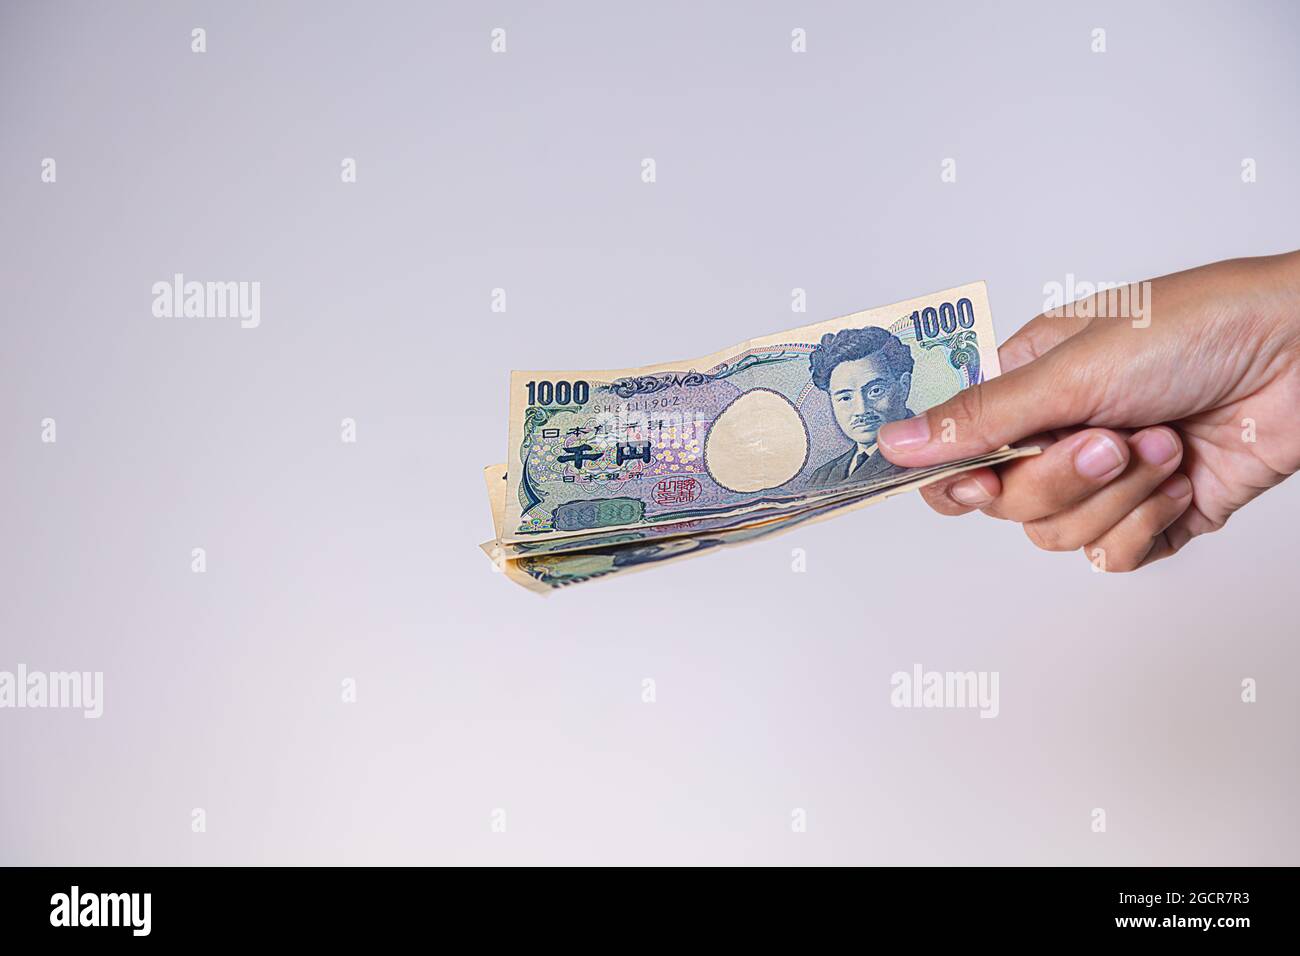 Weibliche Hände zeigen japanischen Yen. Yen ist die Währung Japans. Auf der Vorderseite der Banknoten Hideyo Noguchi, Bakteriologe aus dem 20. Jahrhundert Stockfoto